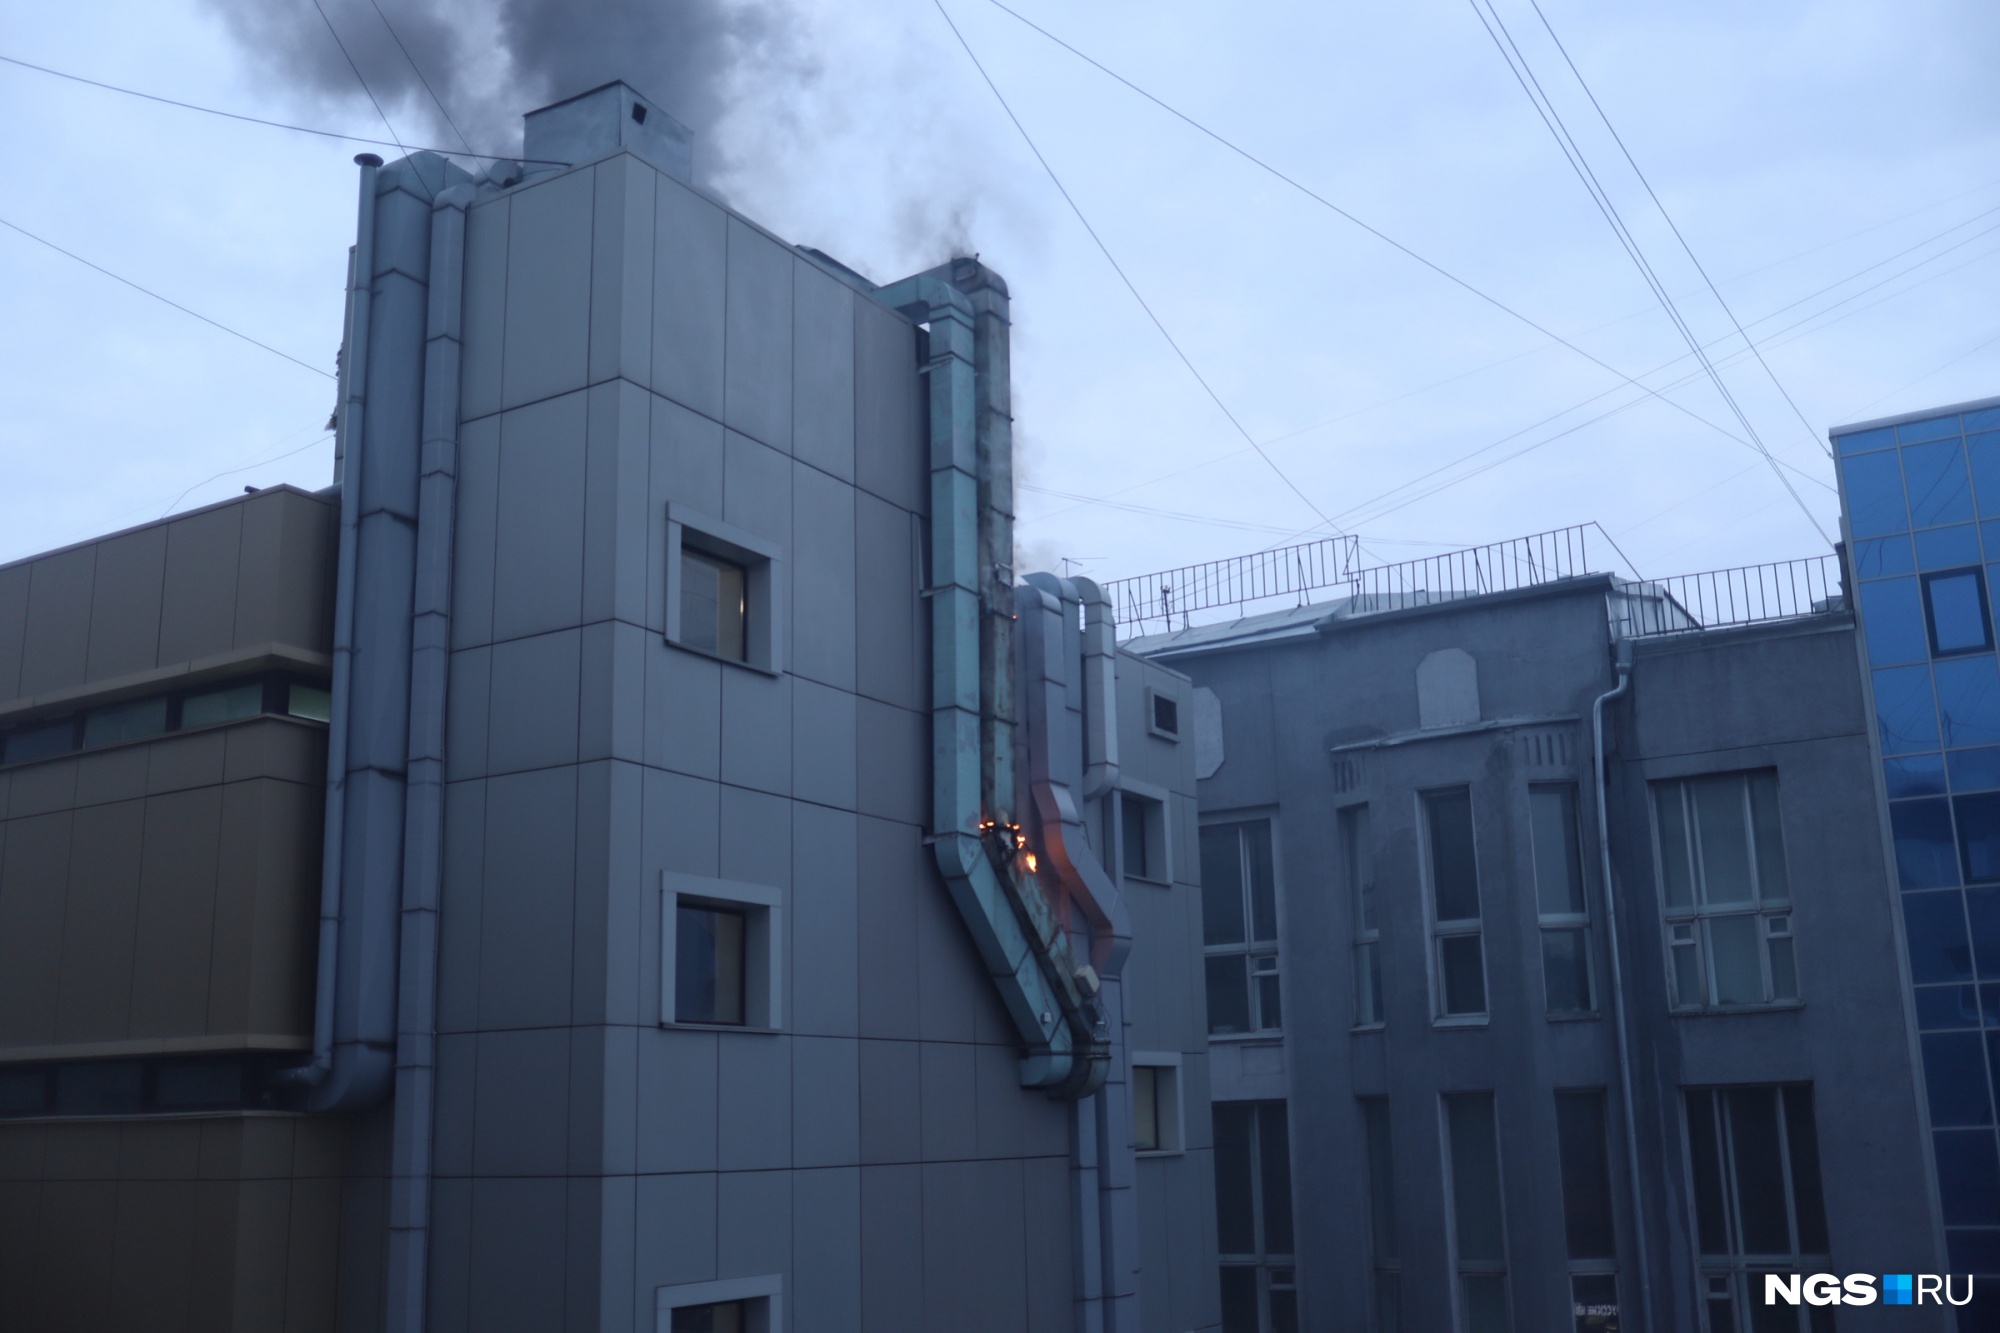 Пожар в ТЦ в центре Новосибирска потушили — что там сейчас происходит